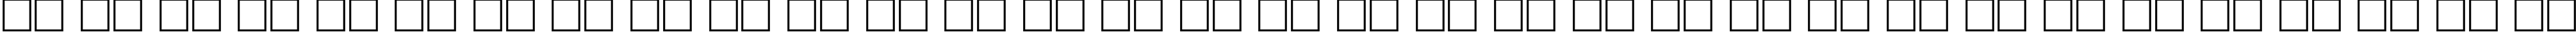 Пример написания русского алфавита шрифтом RodeoExtraBold